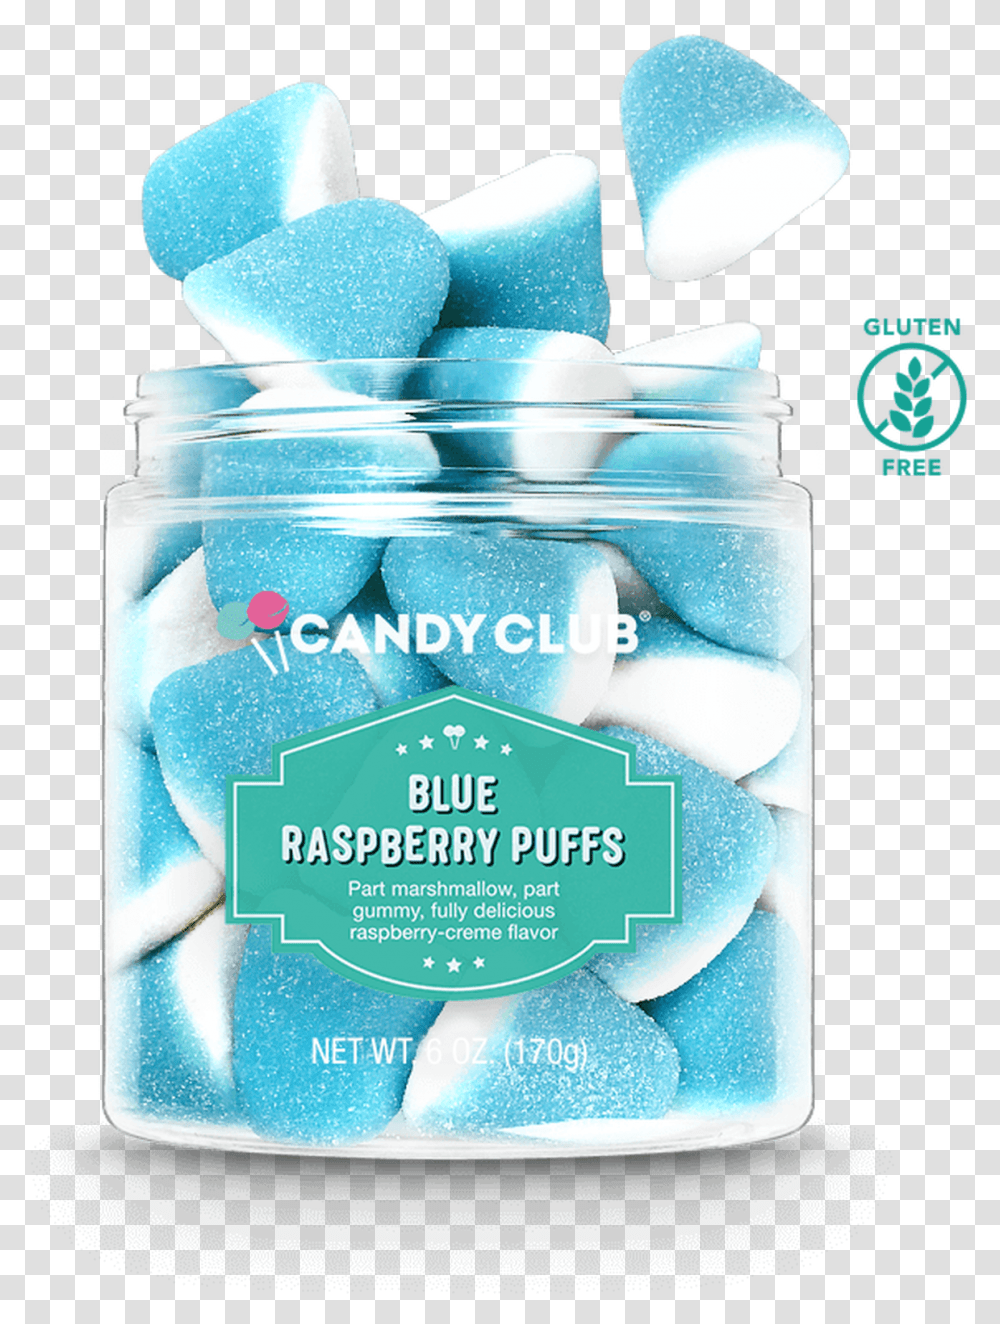 Blue Raspberry Puffs, Jar Transparent Png